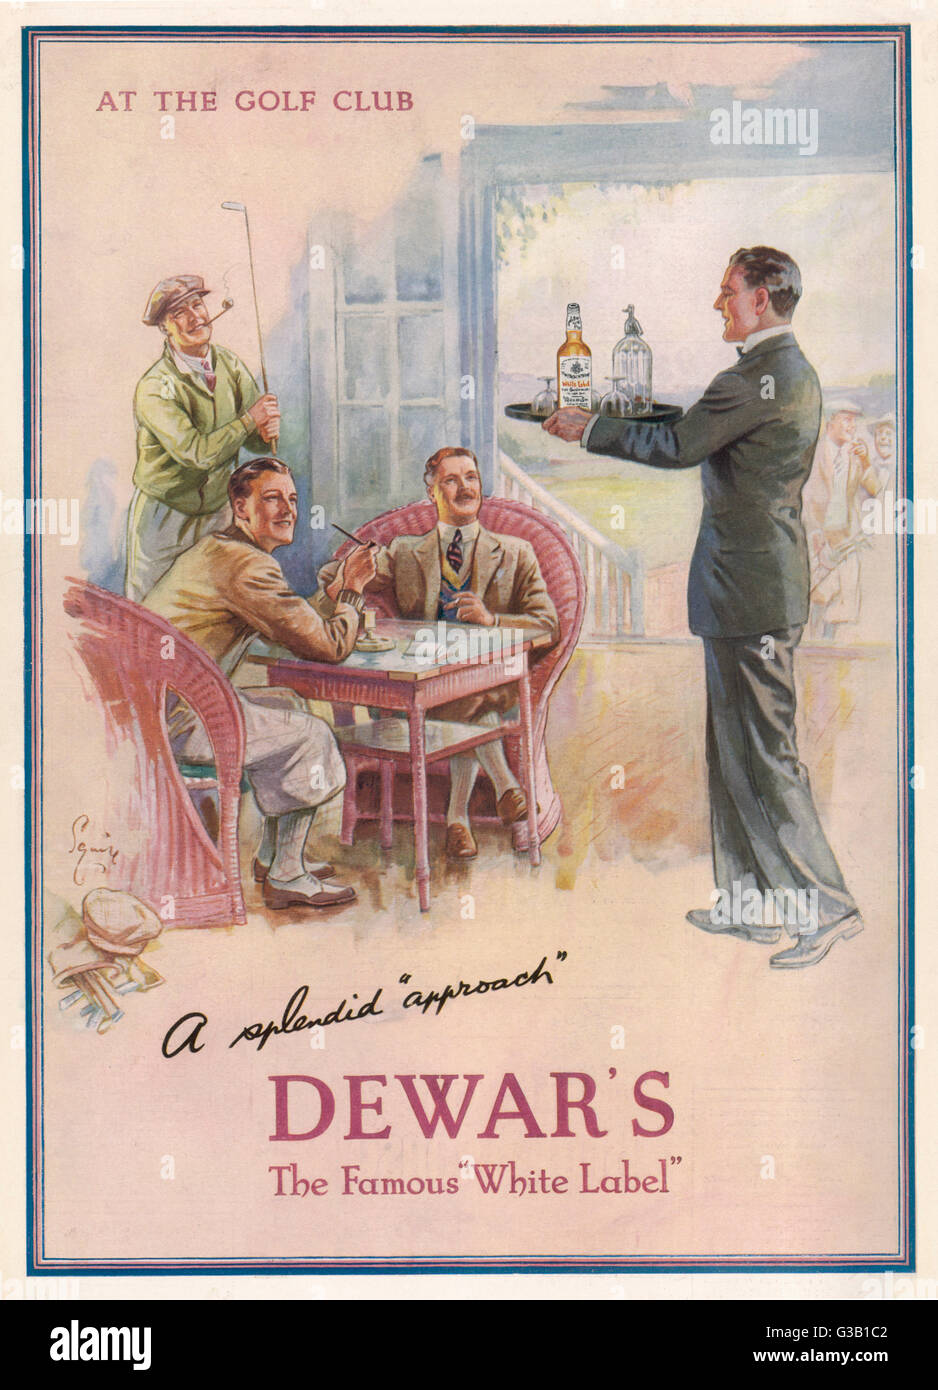 Dewar's White Label im Golfclub Datum: 1933 Stockfoto